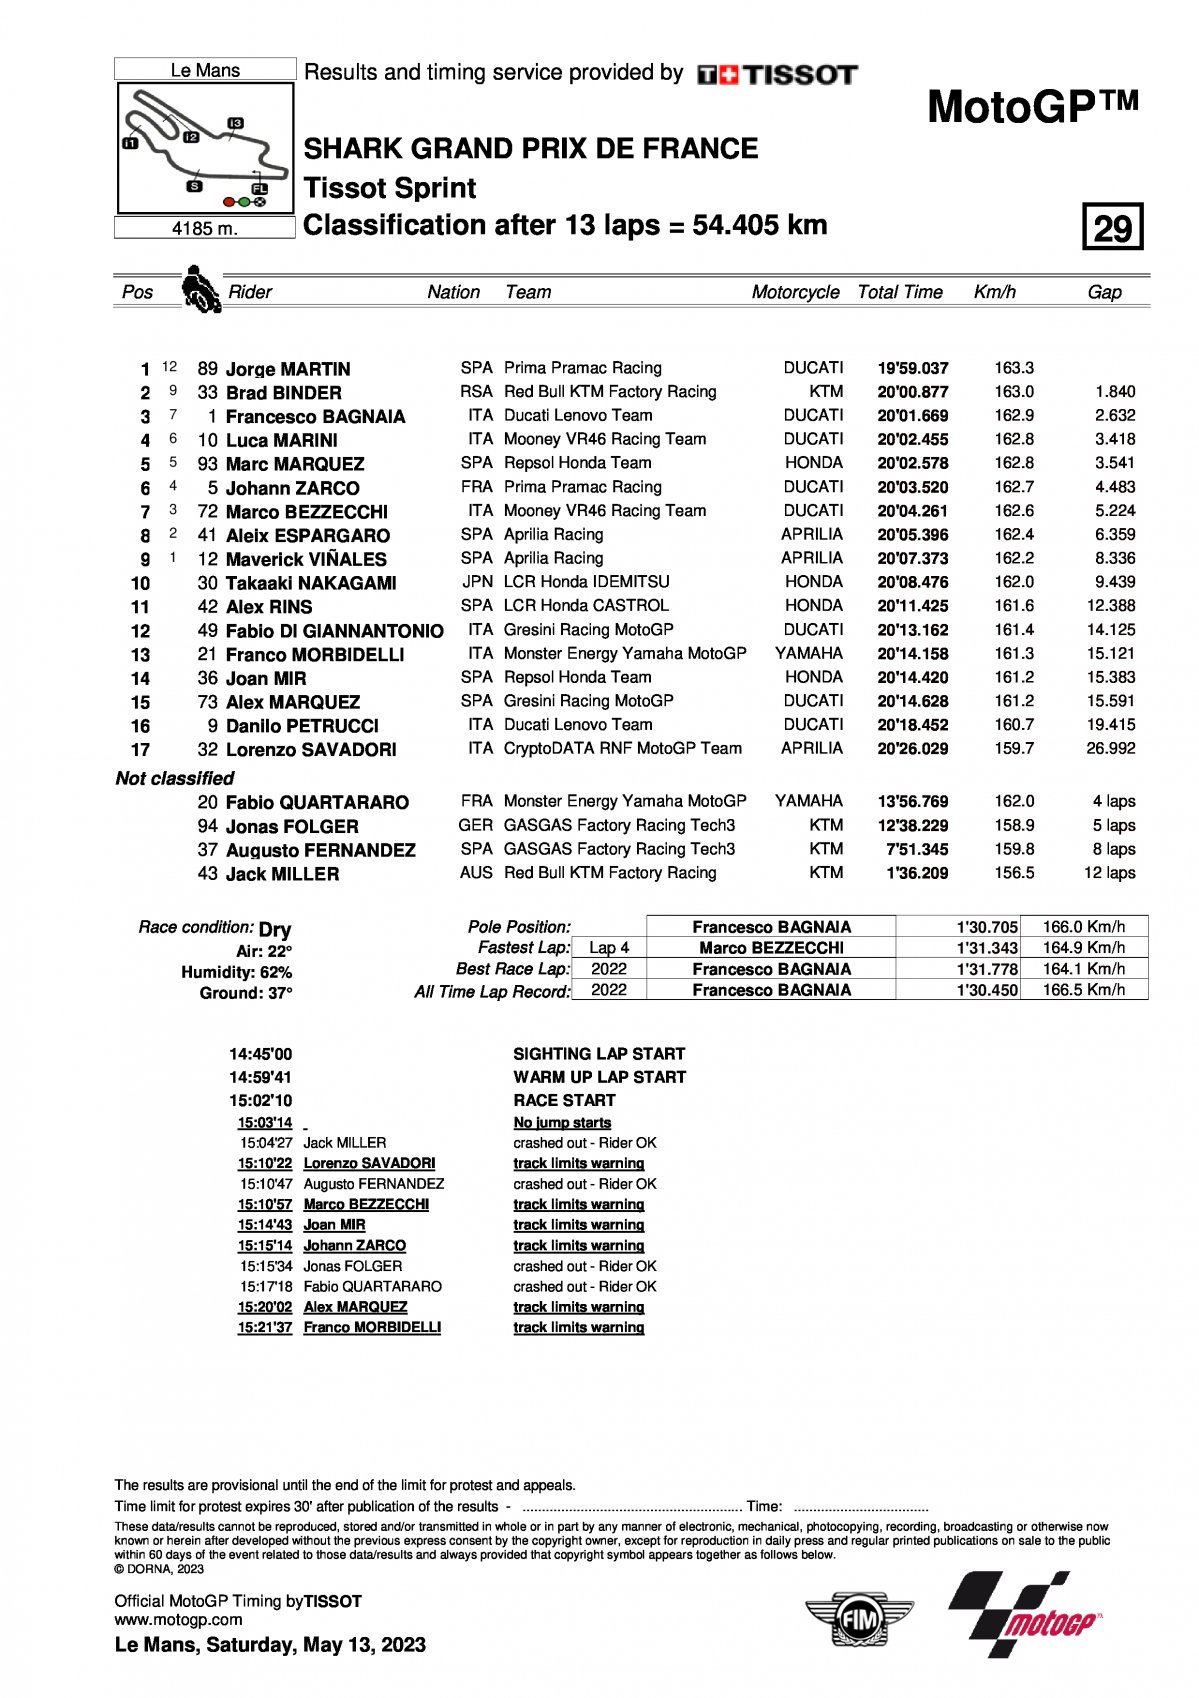 Результаты MotoGP Sprint Race FrenchGP (14/05/2023)